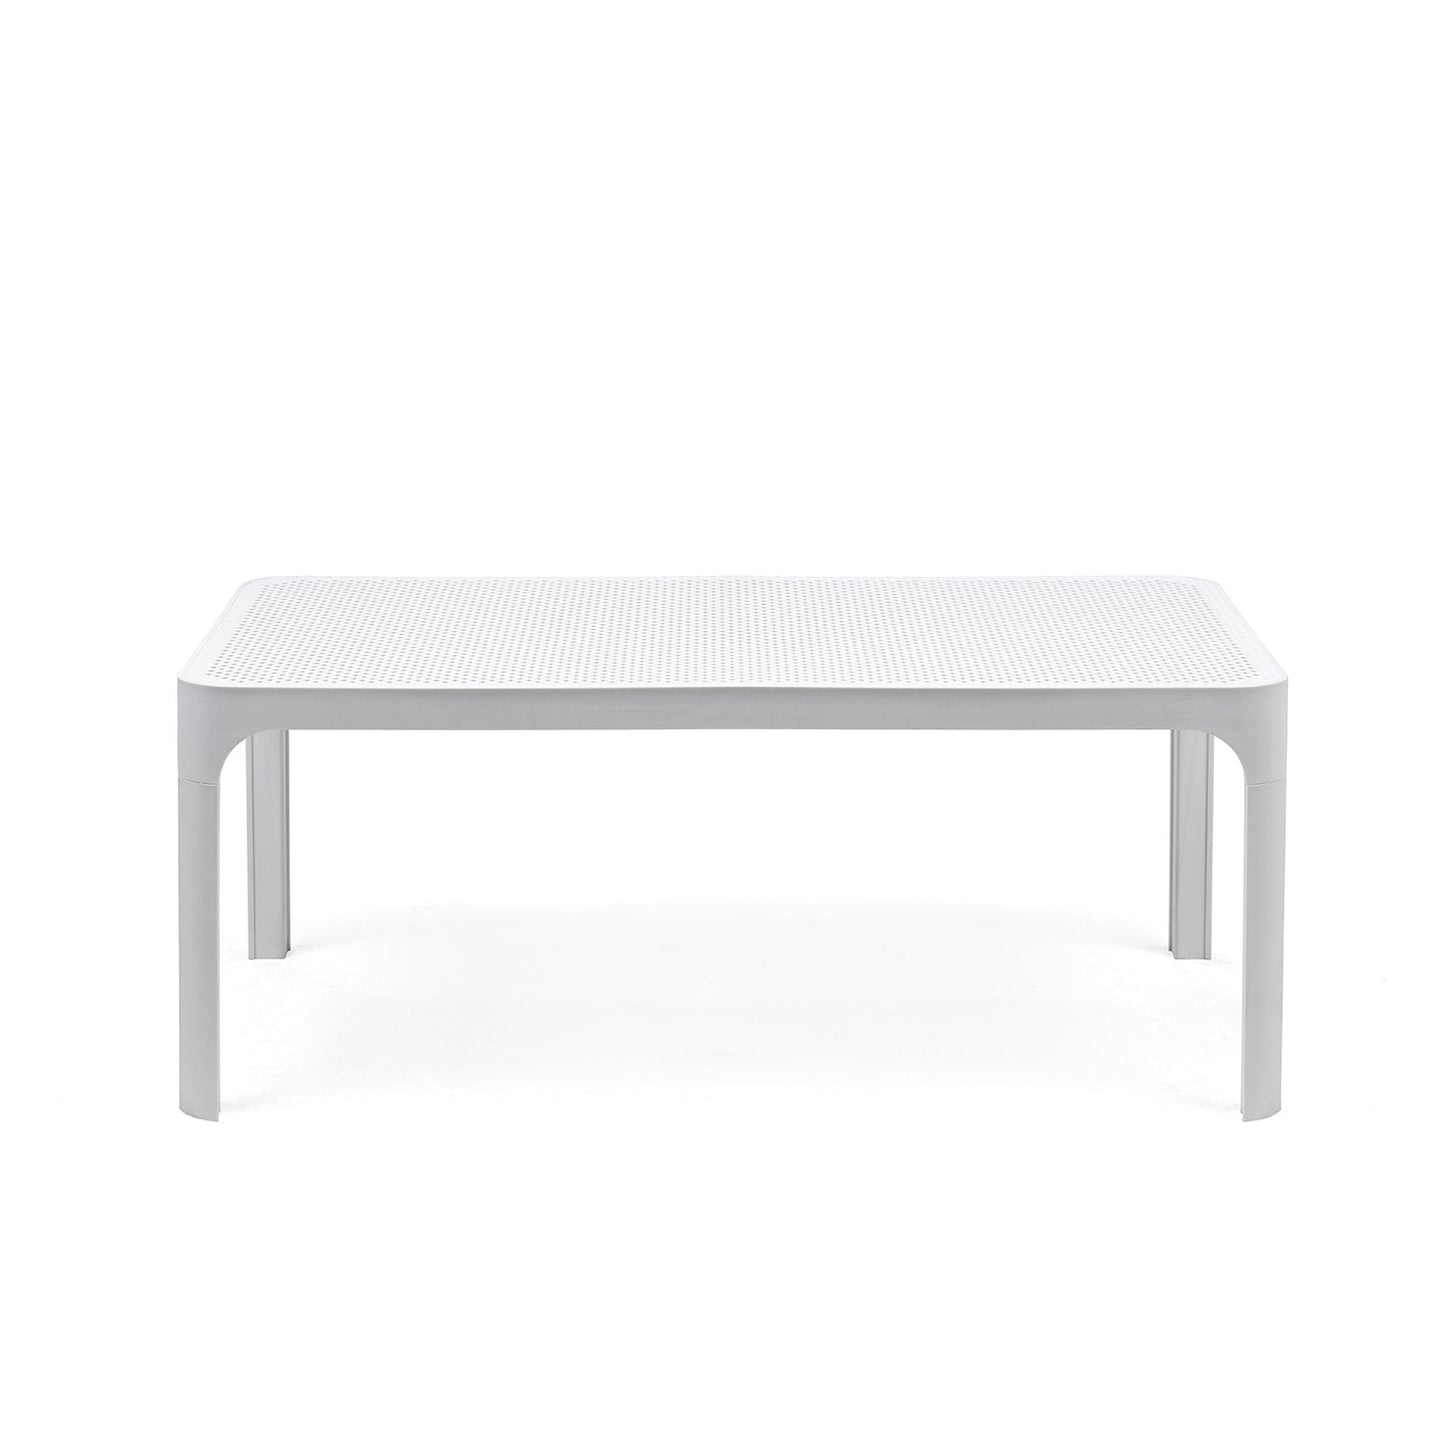 Nardi Net 100cm Garden Table In White